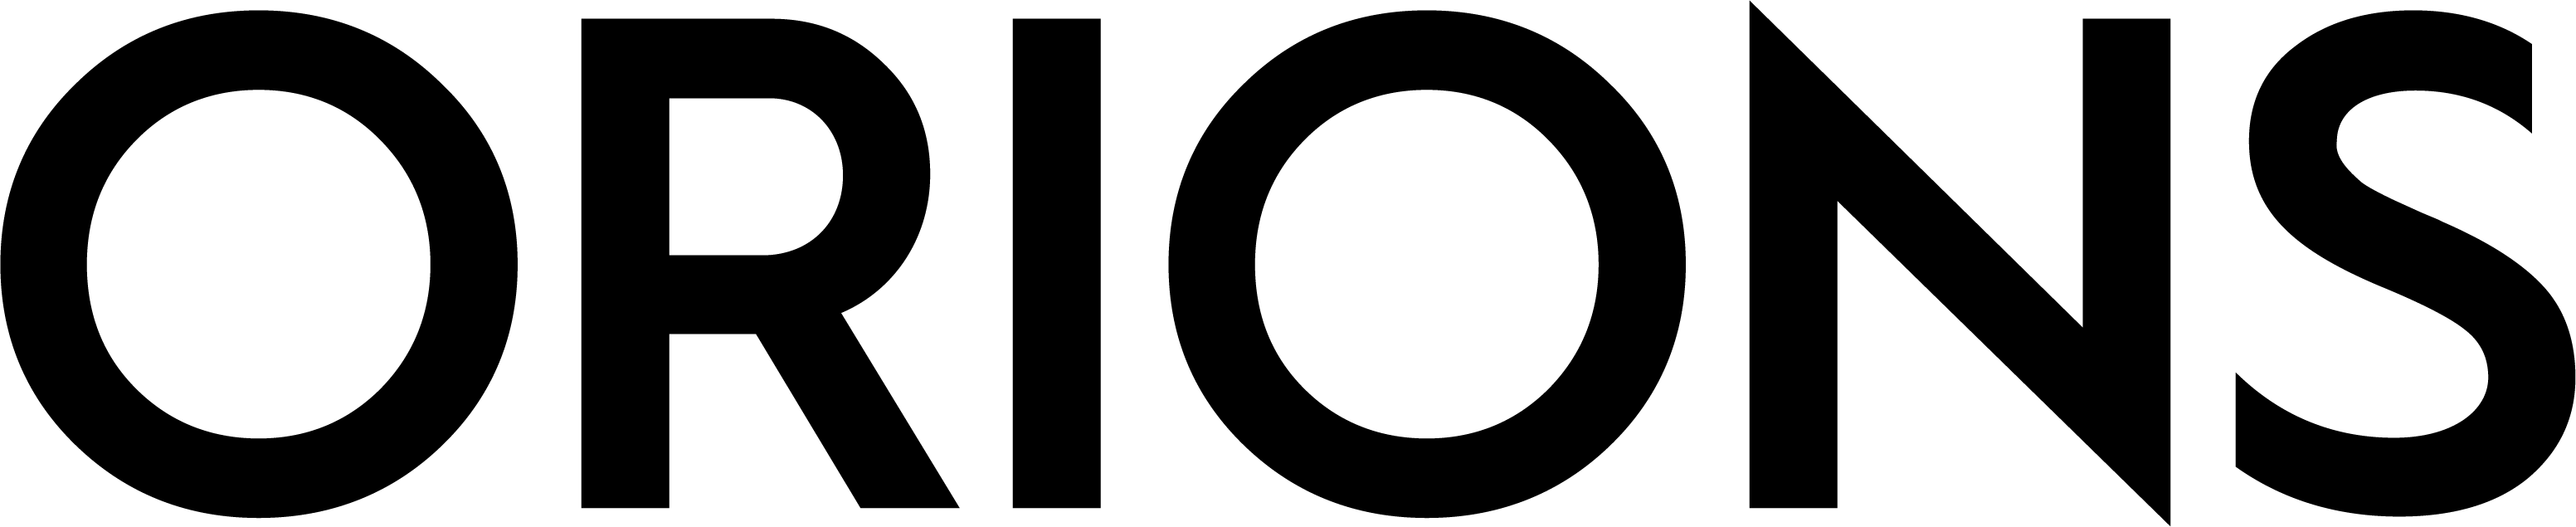 Orions Fashion logo i sort på hvit bakgrunn, minimalistisk design.